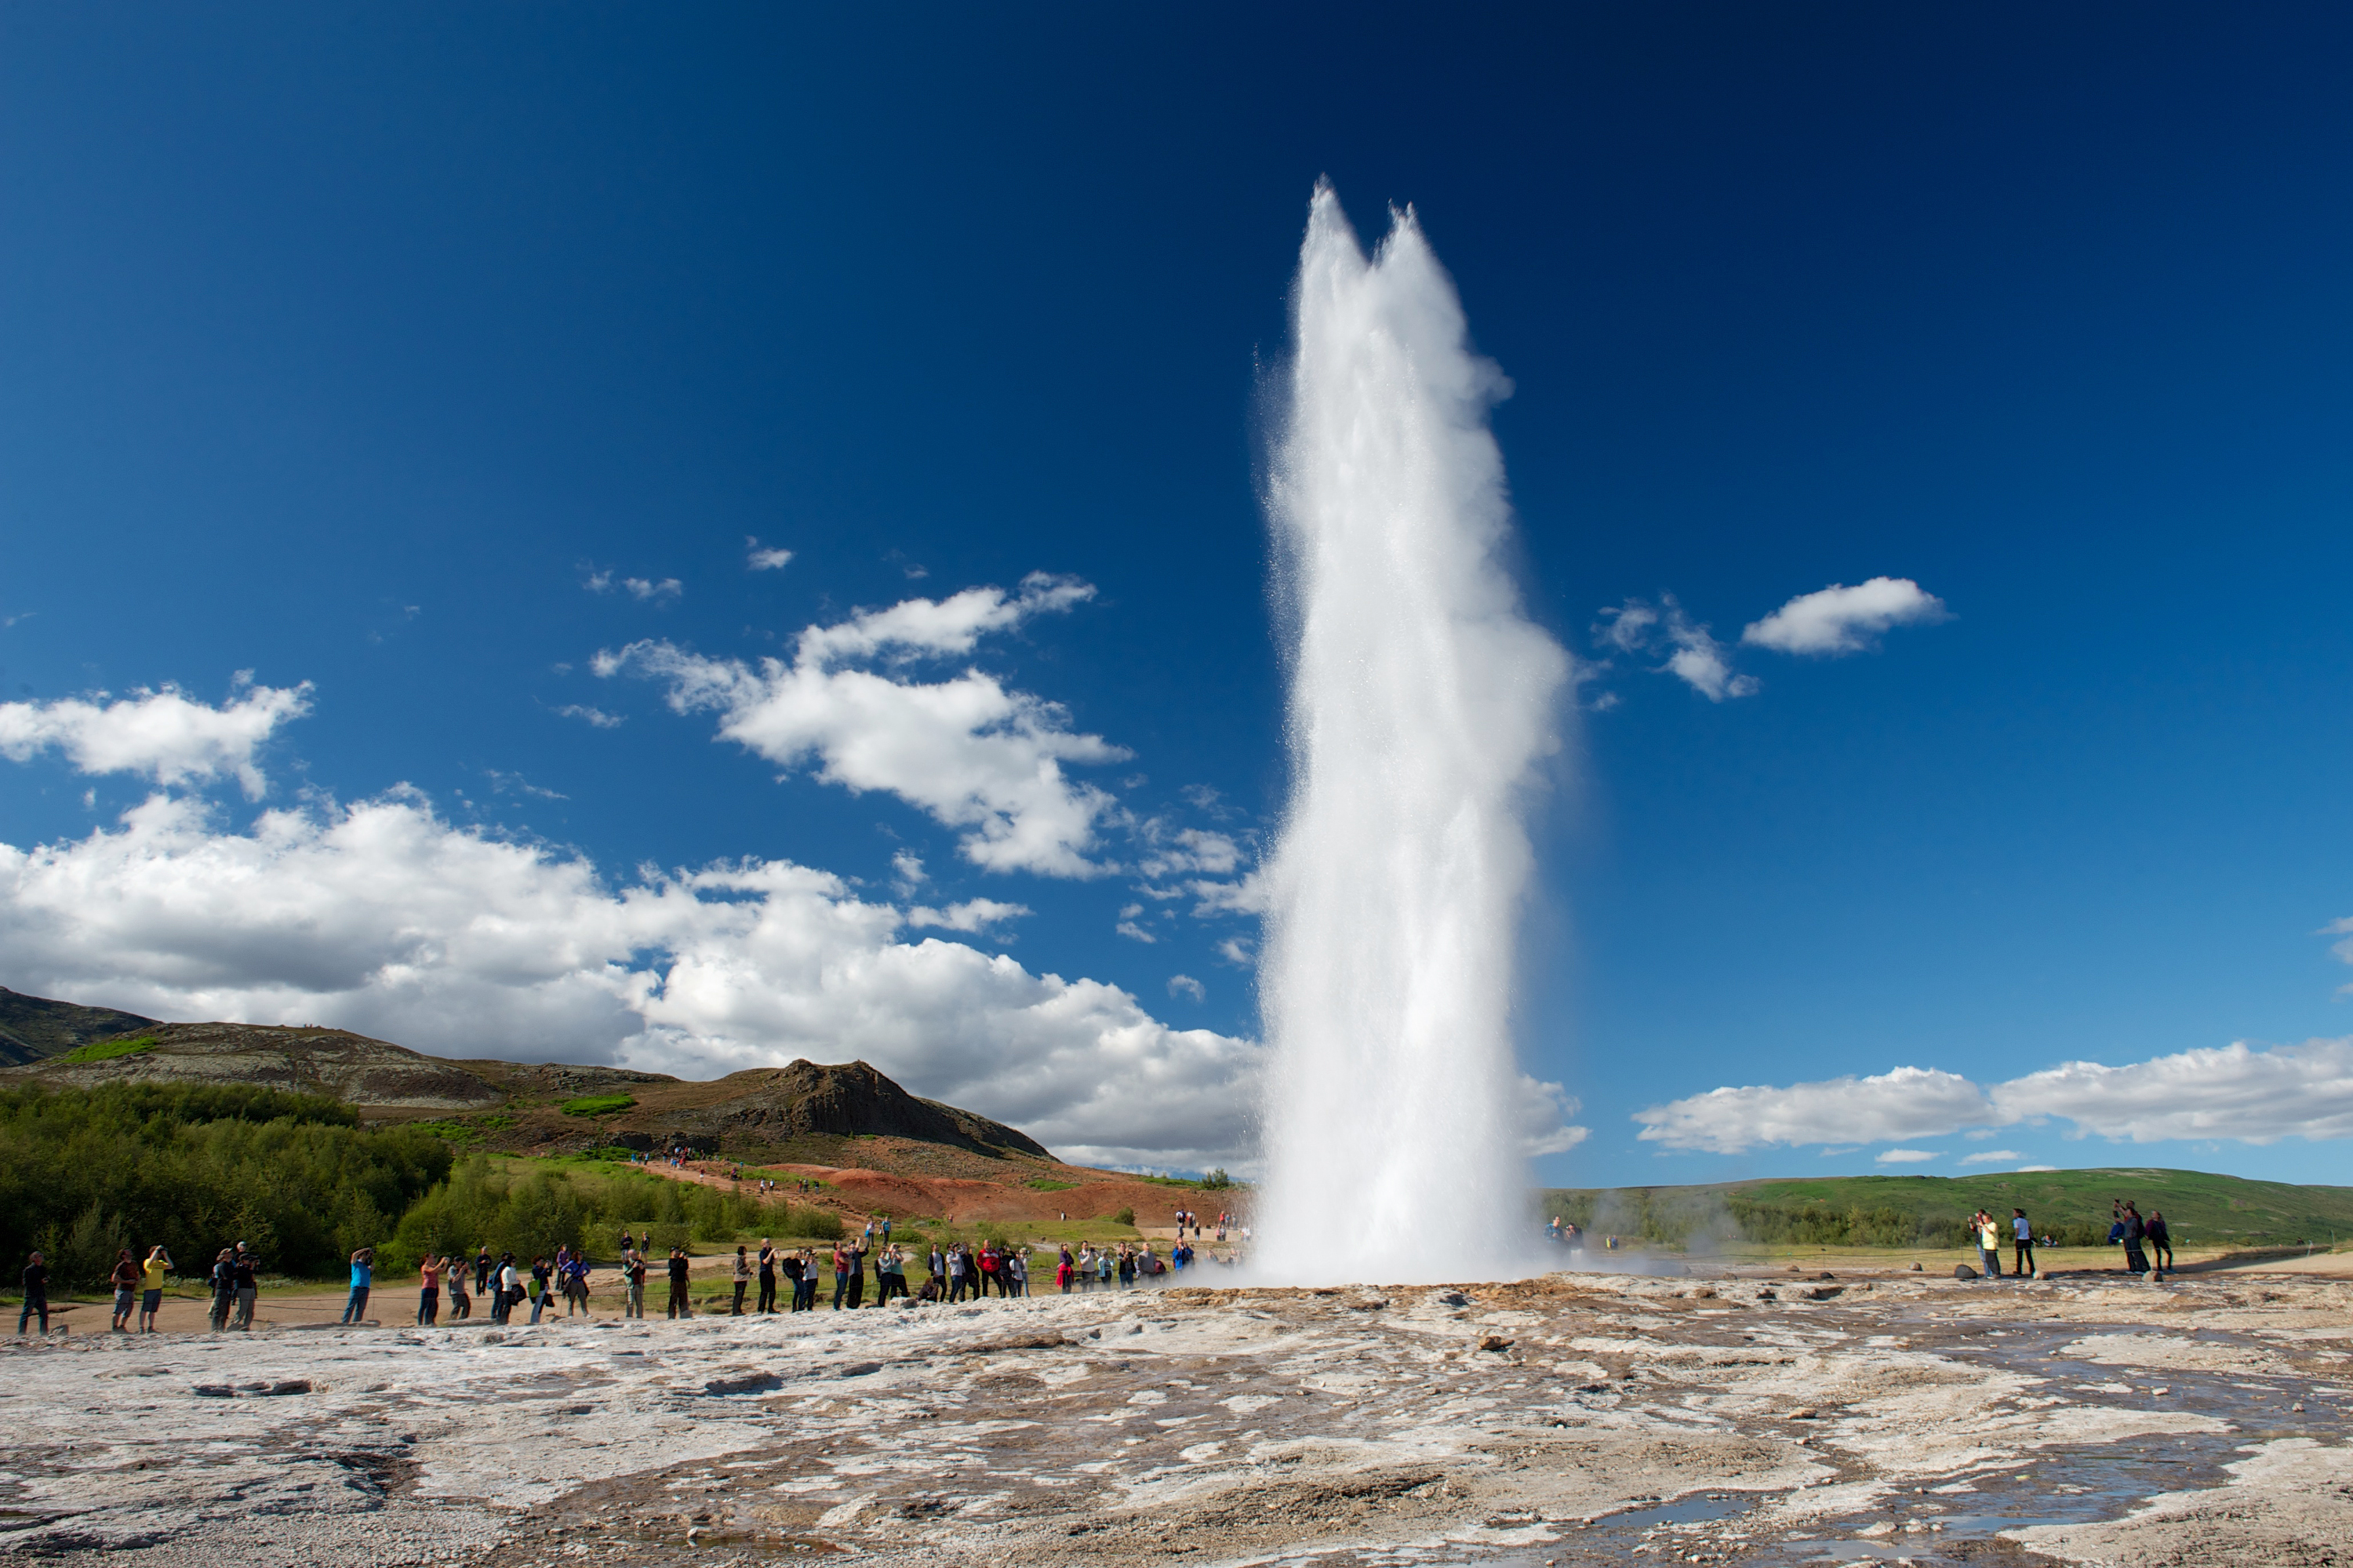 La zone géothermique de Geysir est réputée pour ses sources chaudes, ses fumerolles, ses bassins de boue et ses geysers.